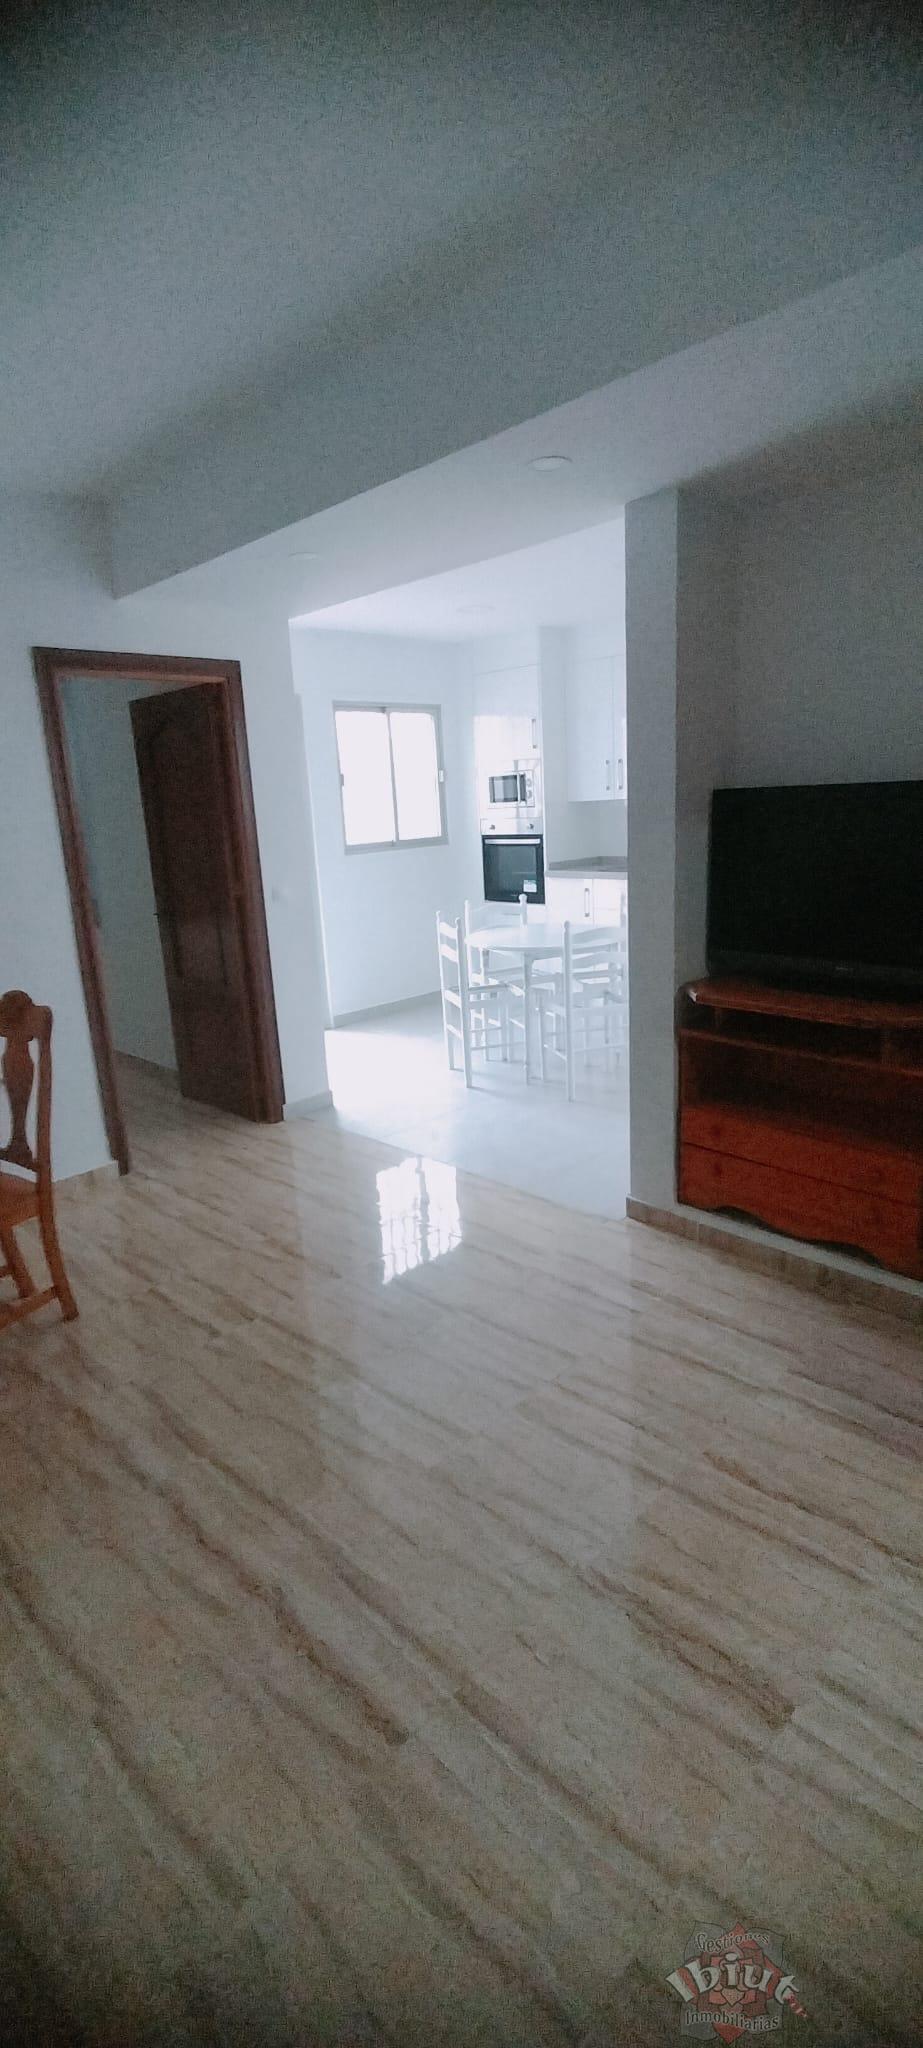 For rent of flat in Almayate Costa